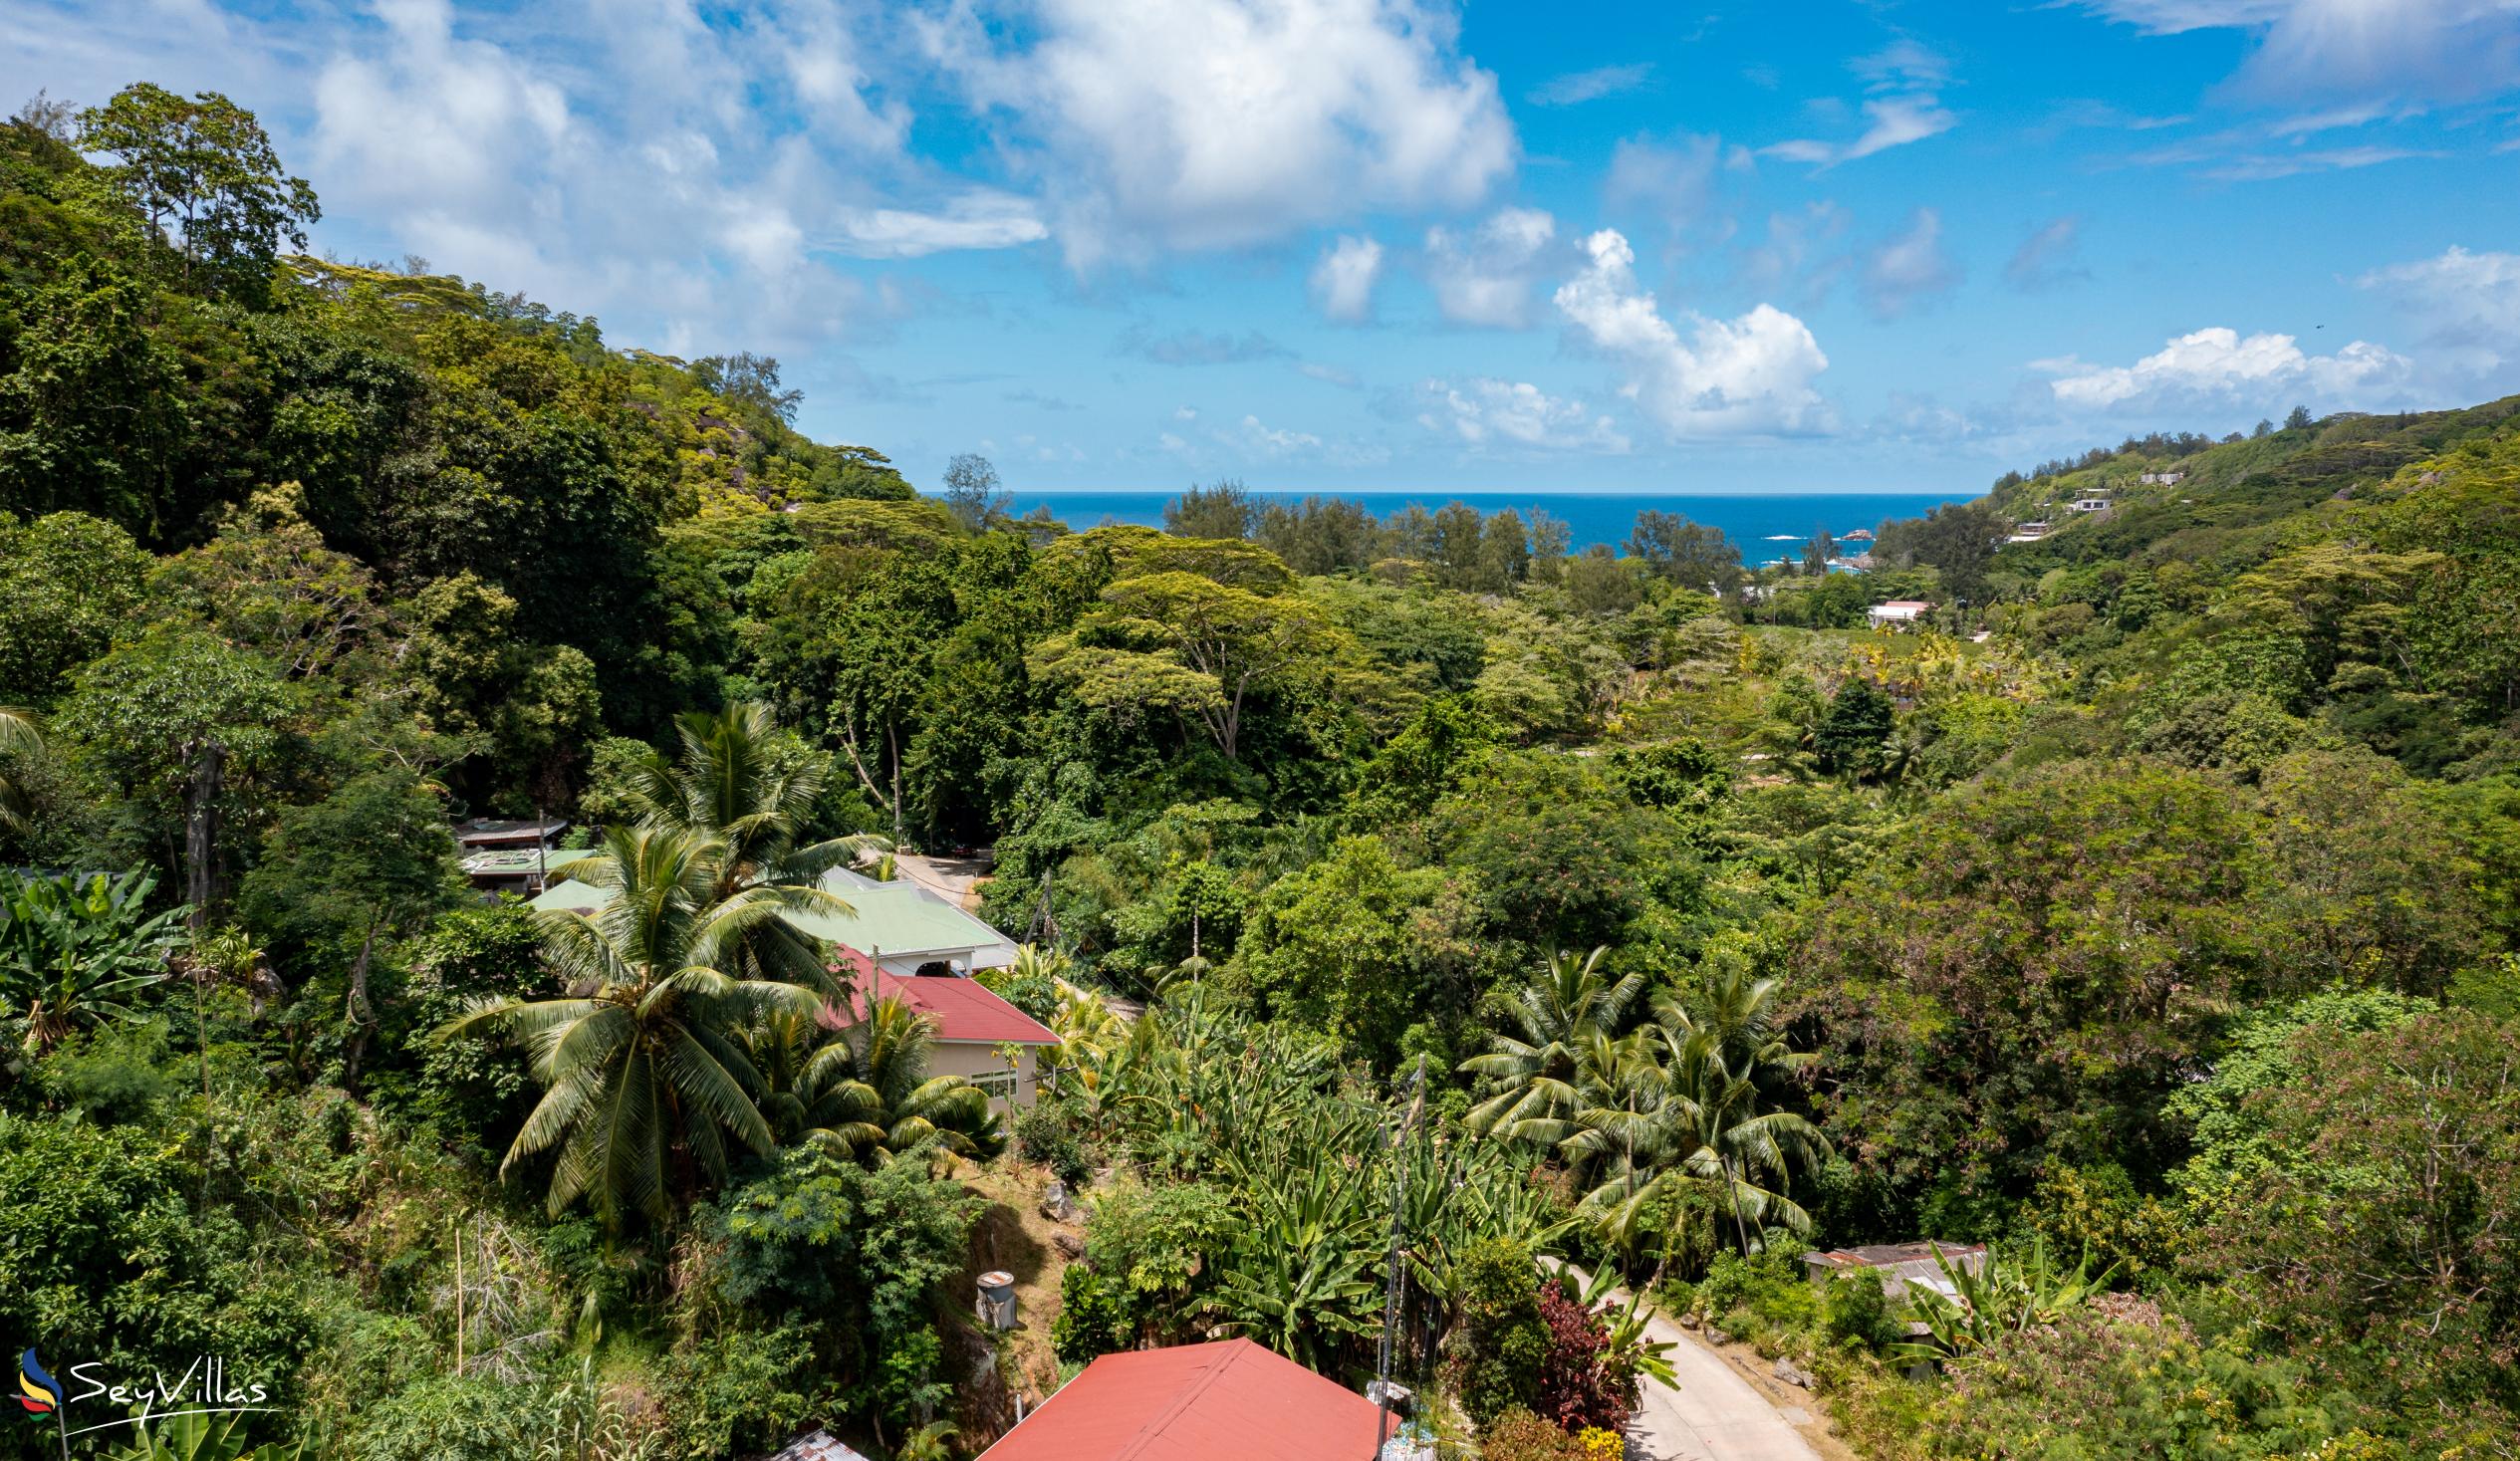 Foto 26: Takamaka Sky Villas - Location - Mahé (Seychelles)